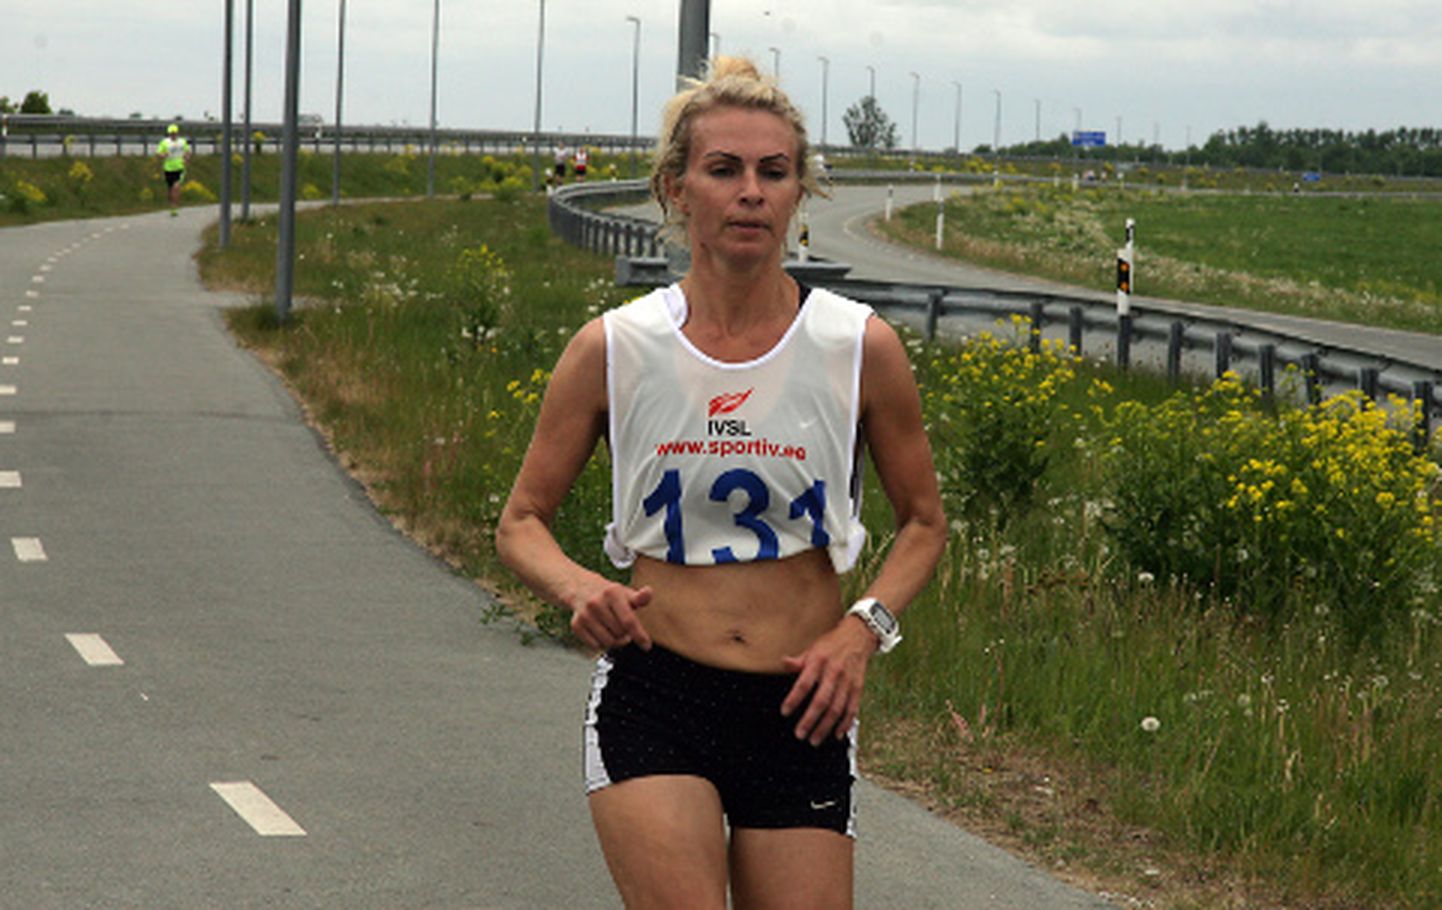 Ida-Virus toimuvatel jooksuvõistlustel on Hillevi Velba tänavu noppinud hulganisti võite. Nüüd tuli vägev saavutus ka Eesti meistrivõistlustelt − maratoni pronksmedal.